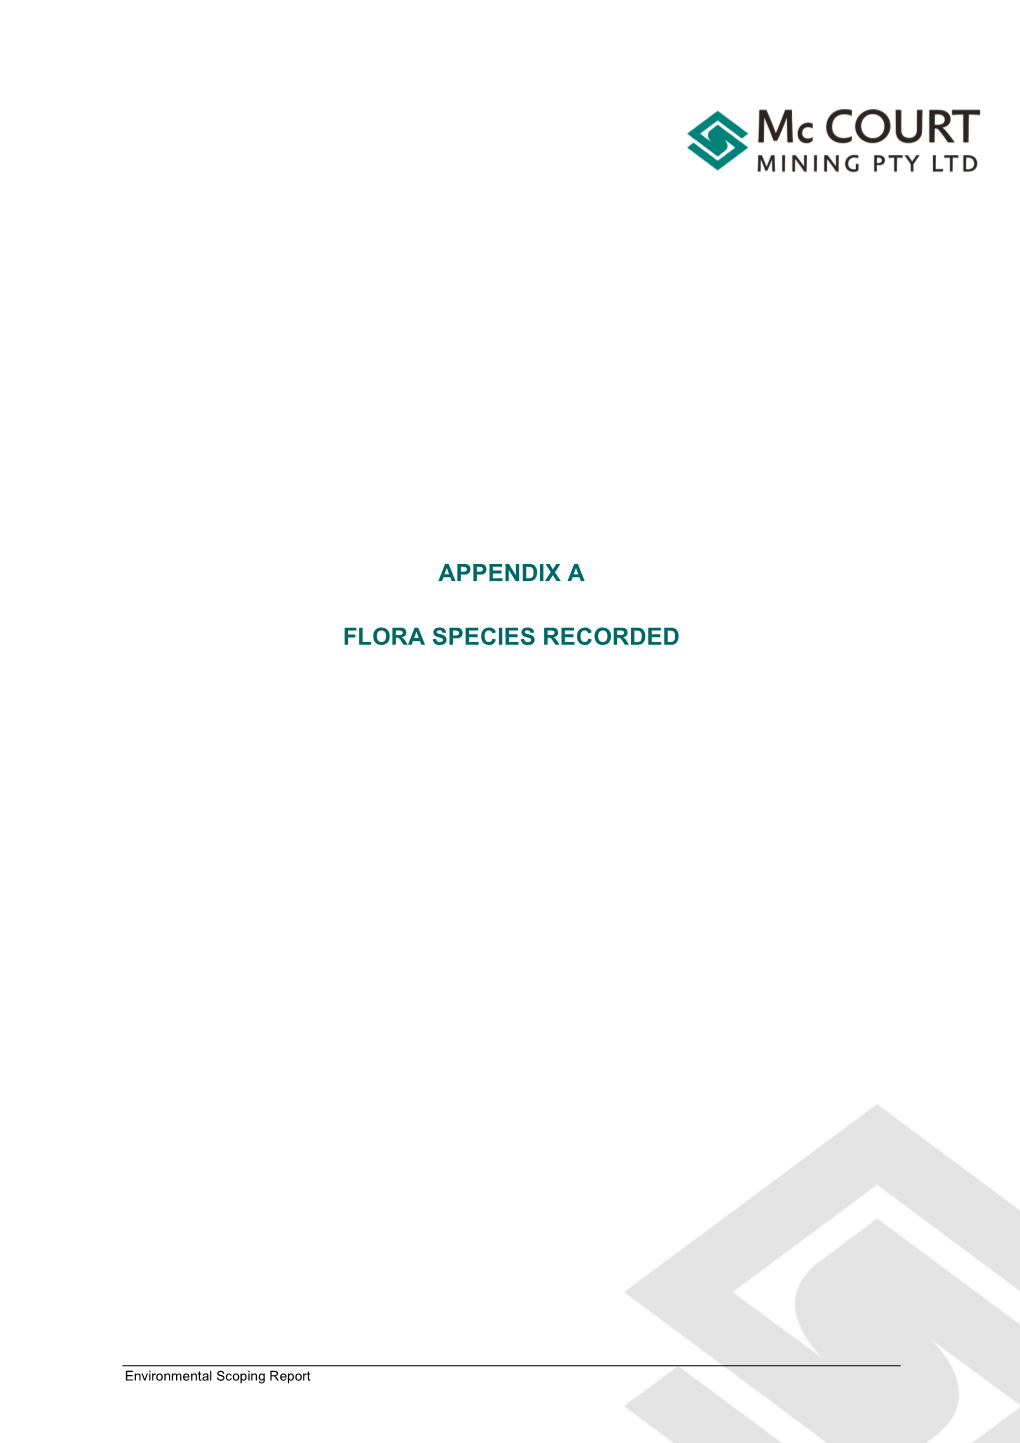 Appendix a Flora Species Recorded